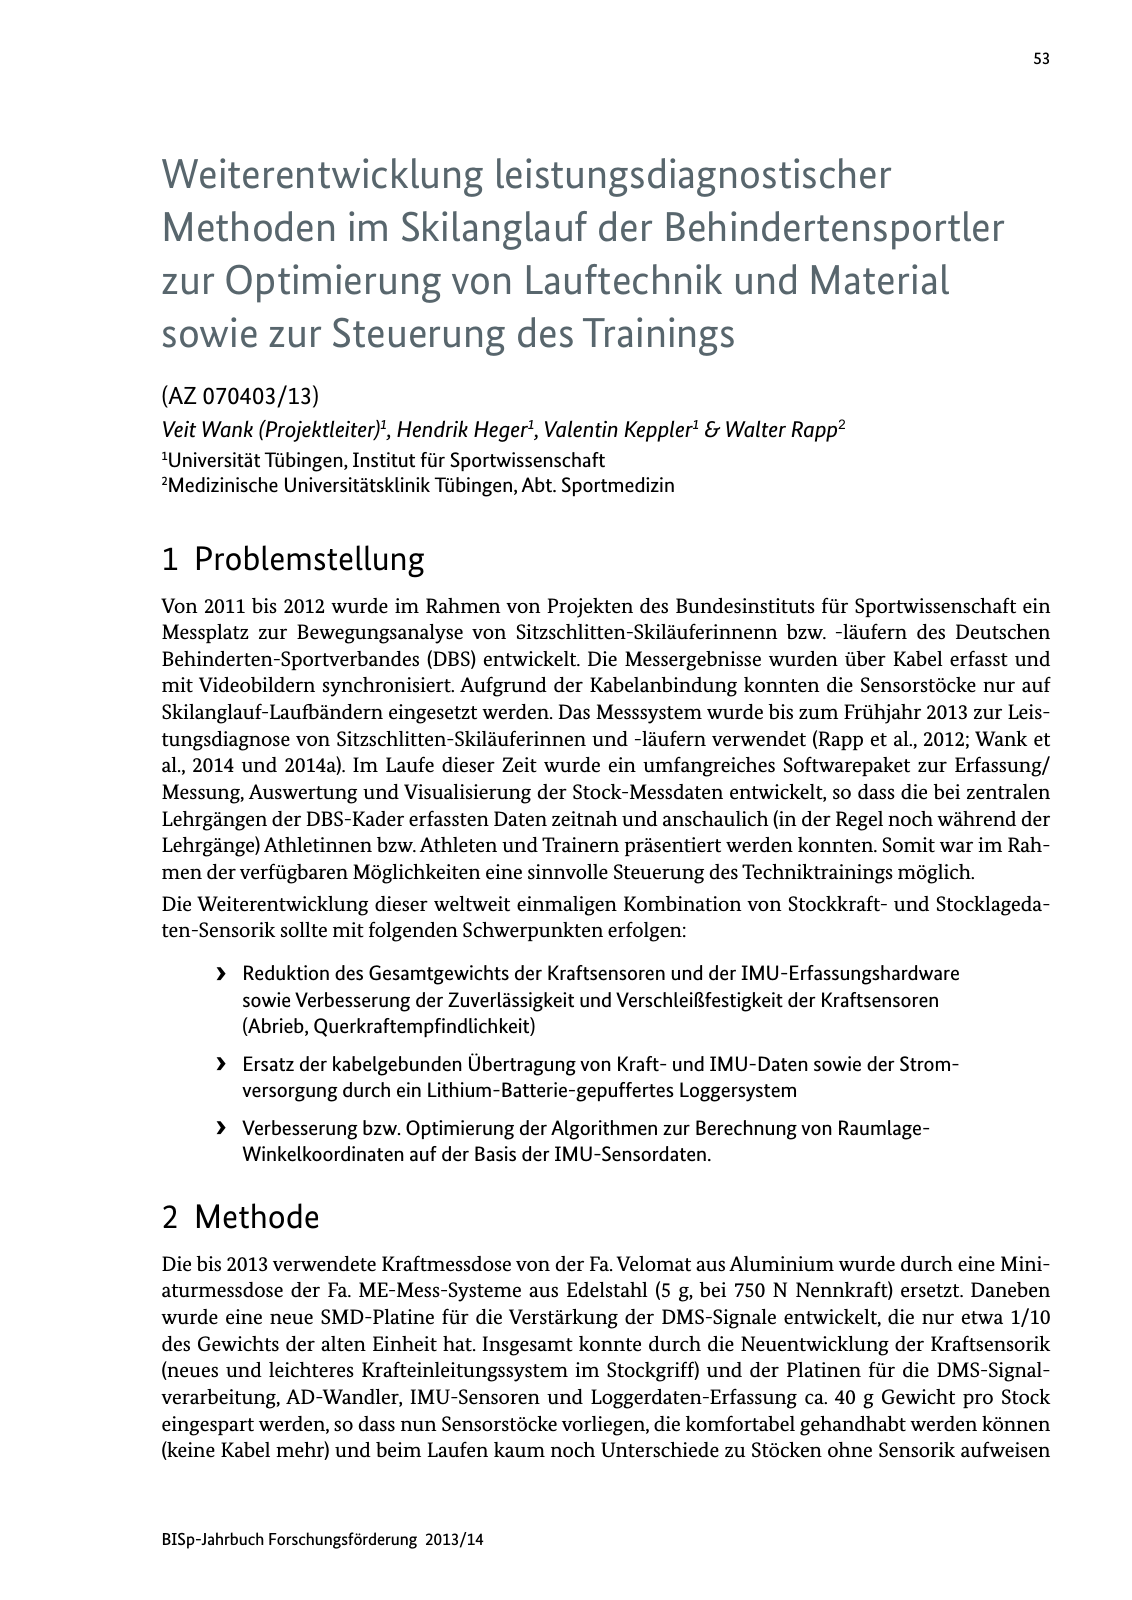 Vorschau BISp-Jahrbuch Forschungsförderung 2013/14 Seite 54